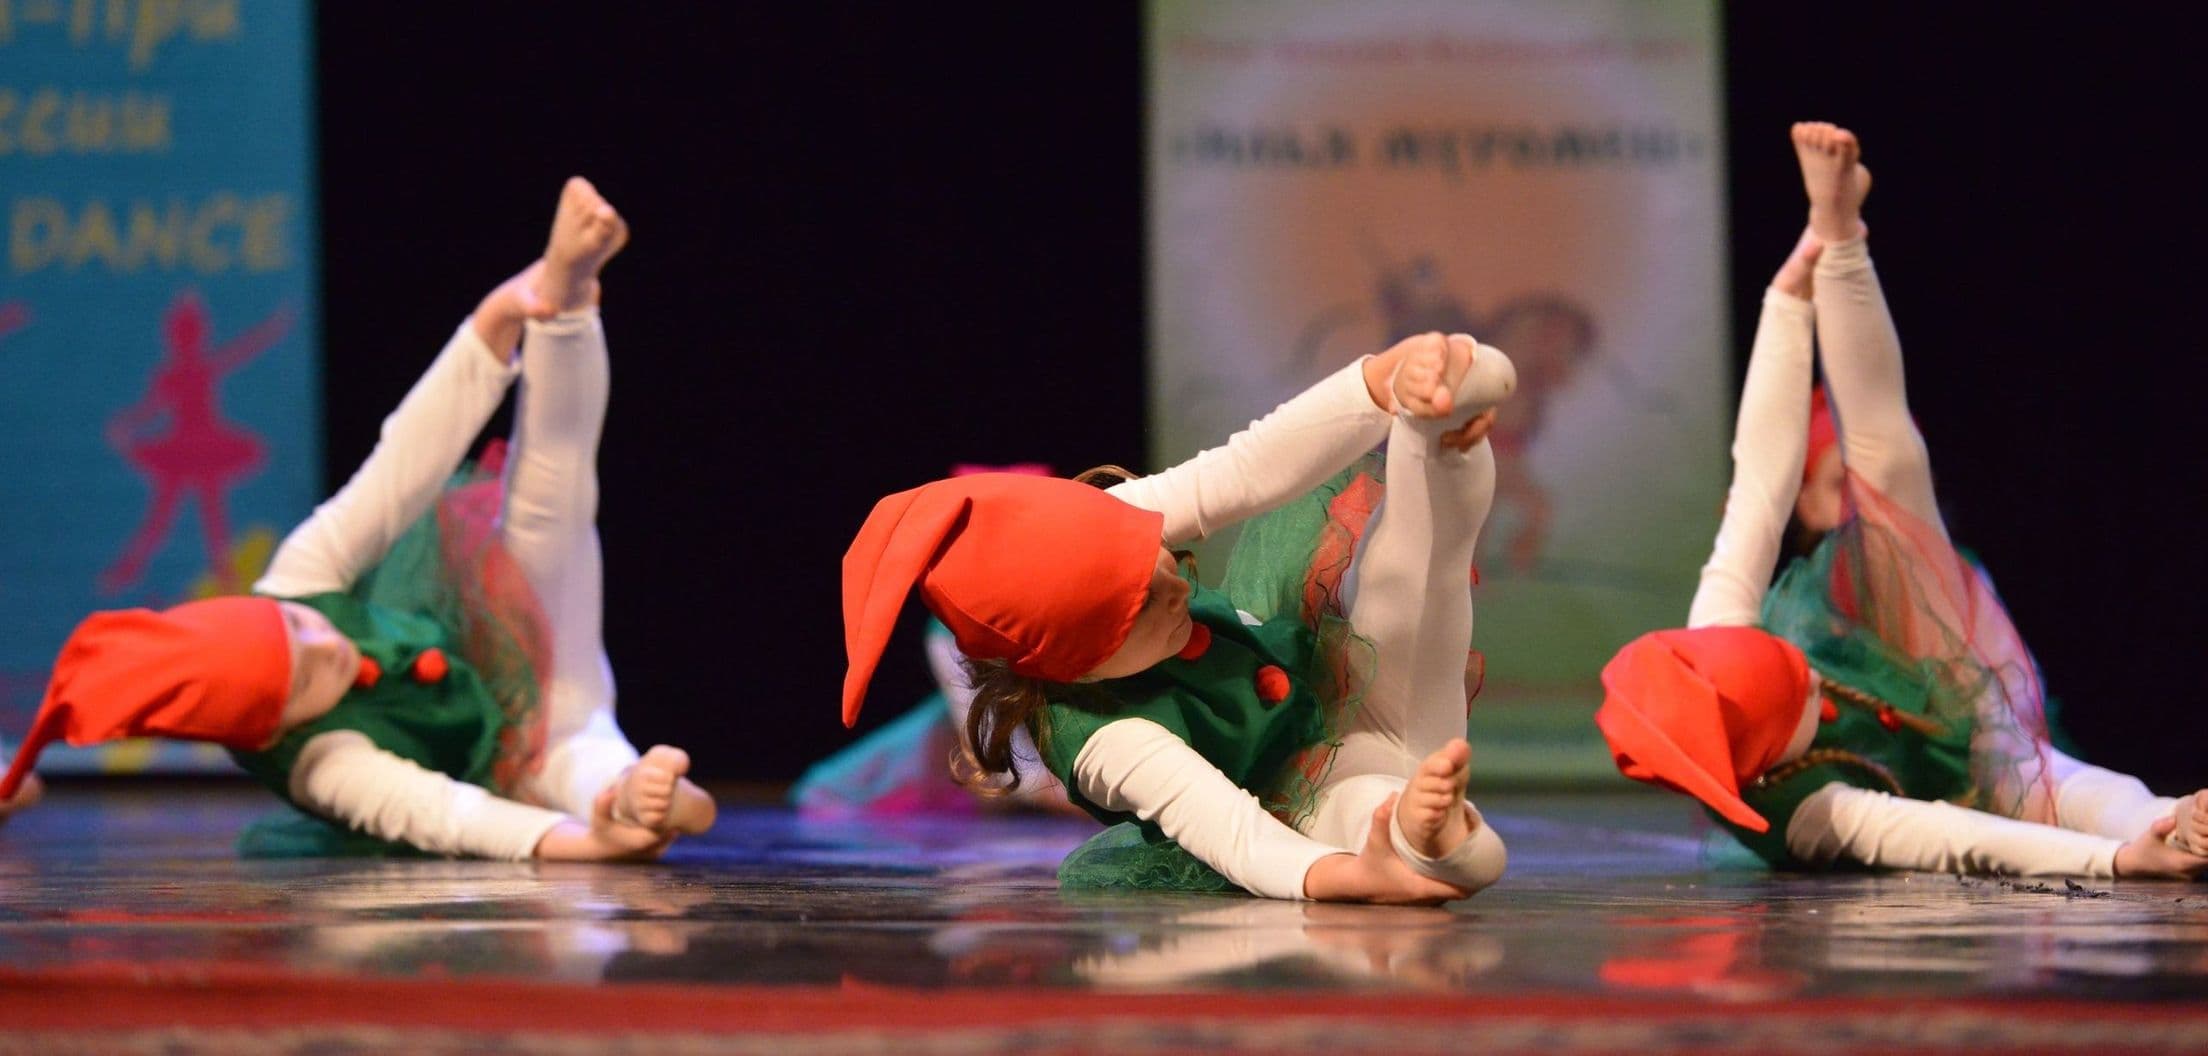 Спортивно-эстрадный танец "Гномики", младшая группа спортивных танцев, хореограф Асия К.